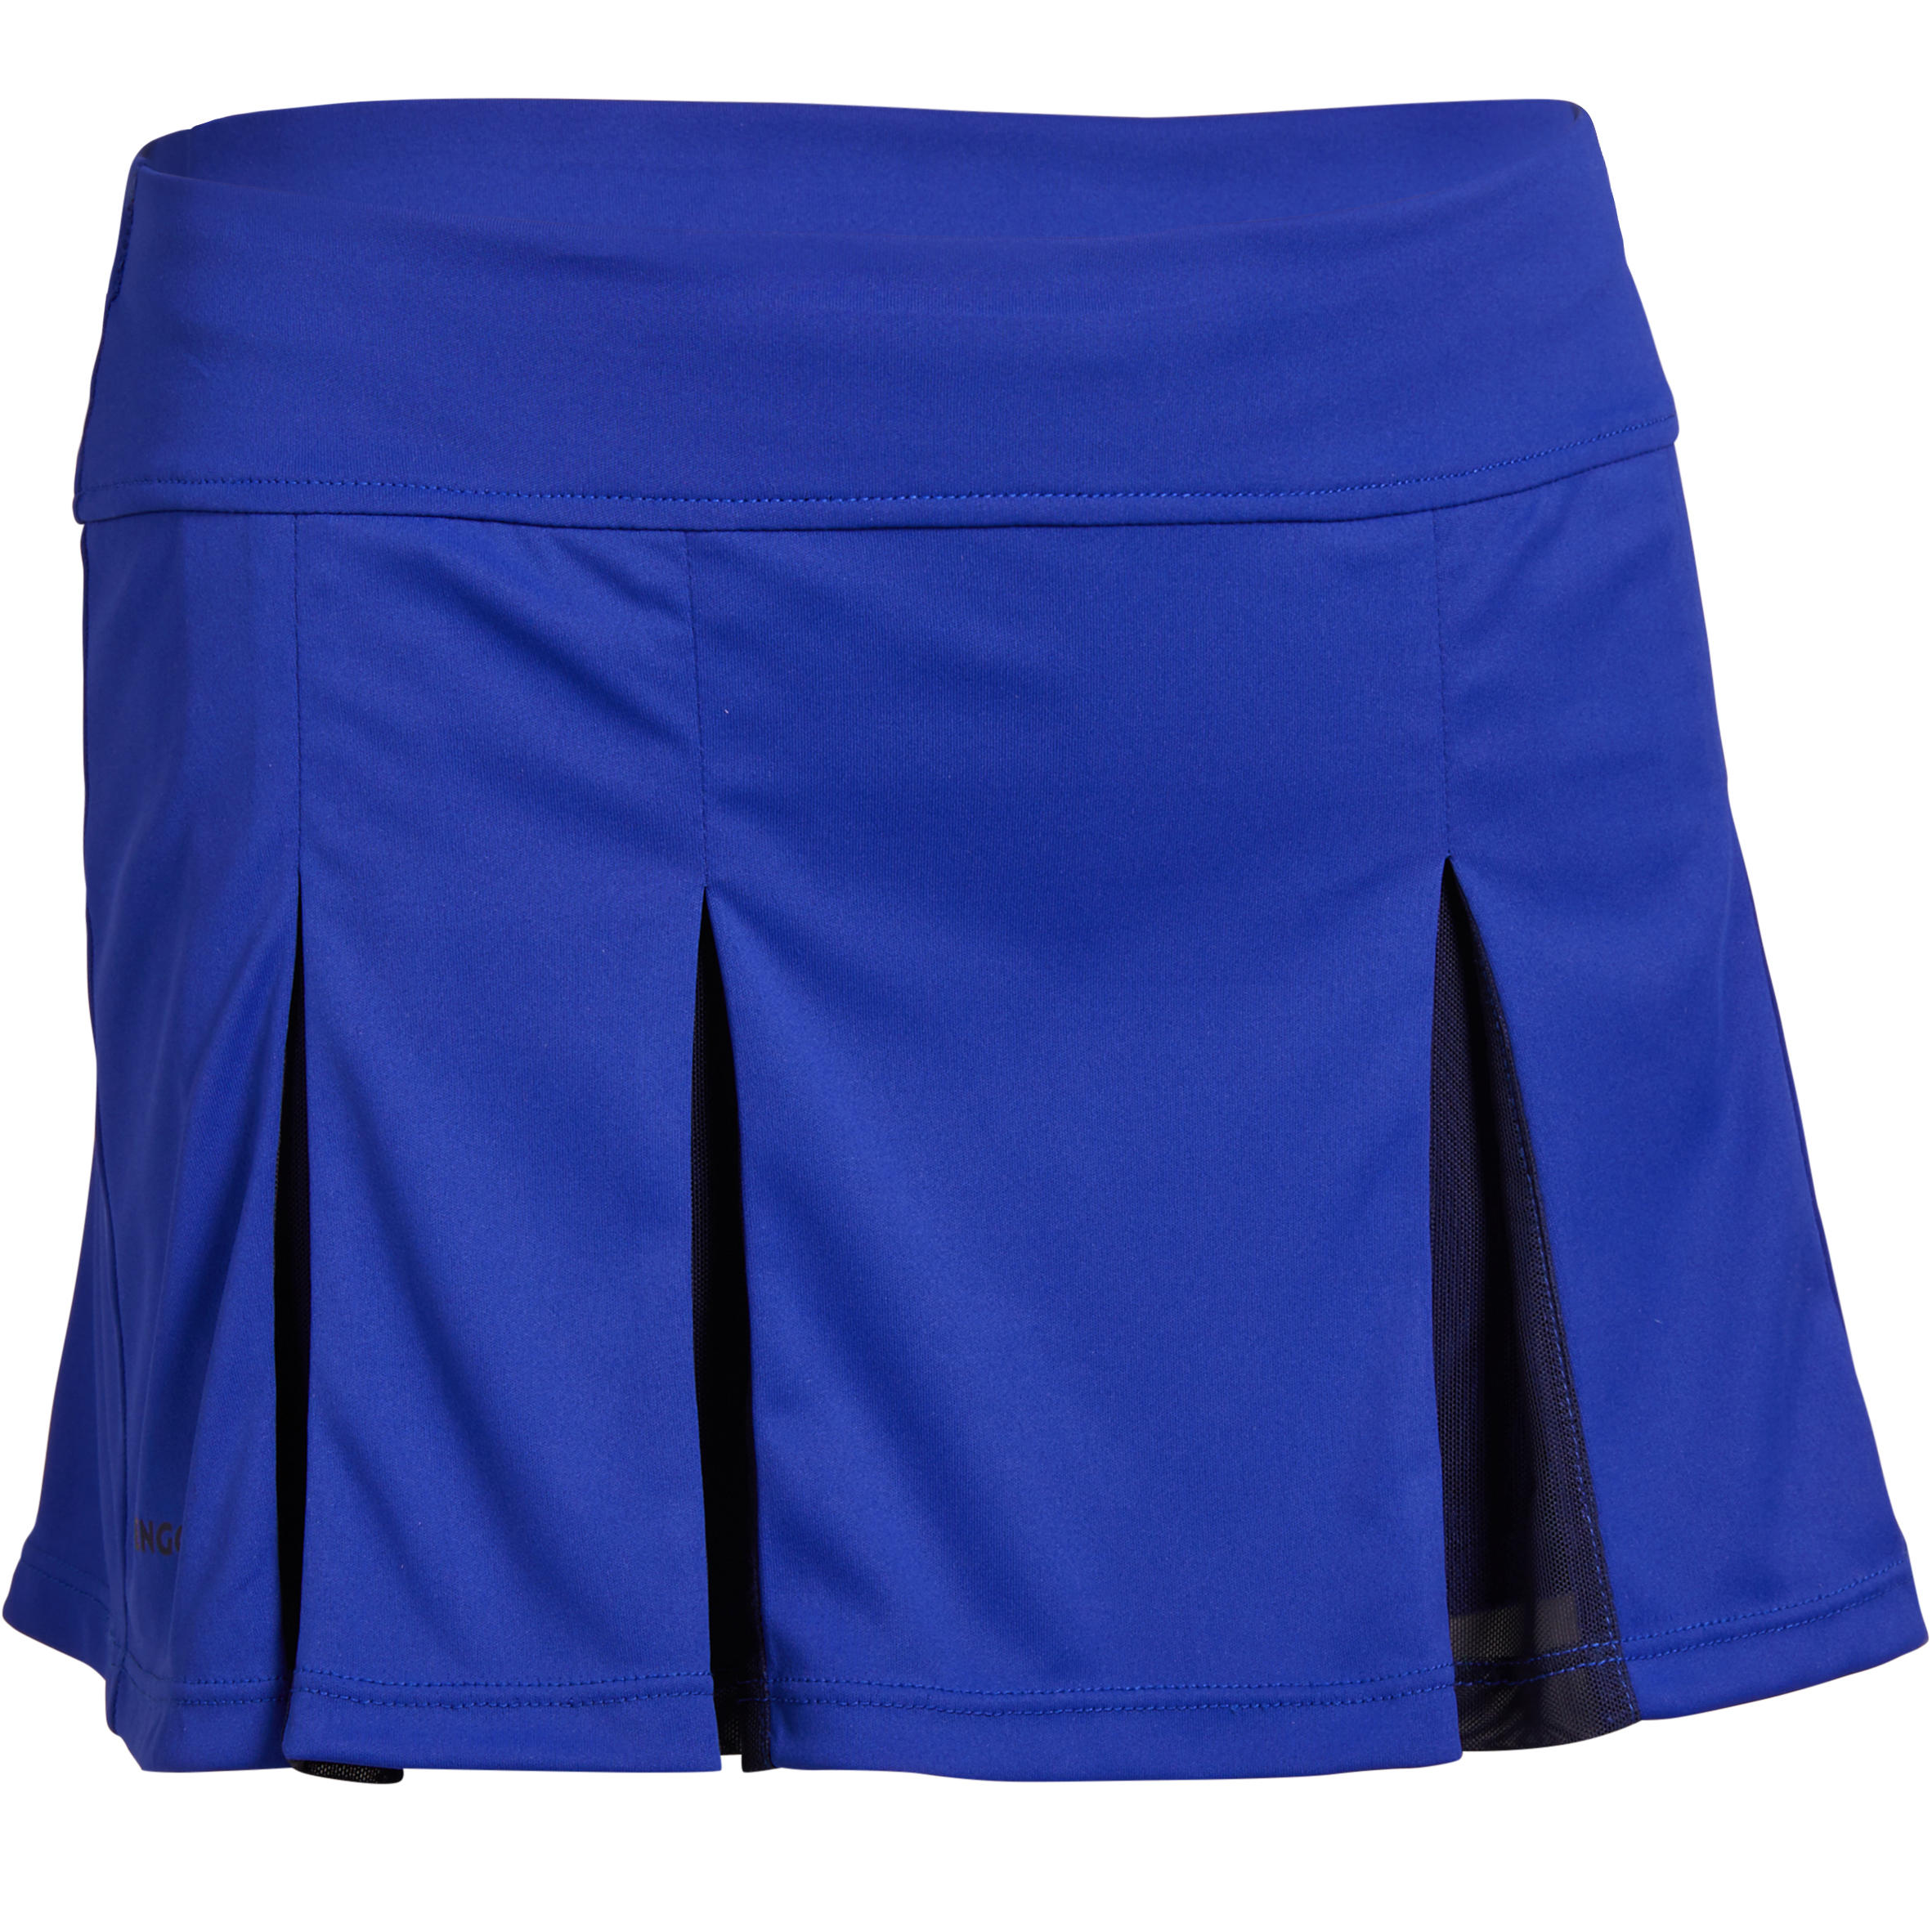 ARTENGO 900 Girls' Skirt - Blue